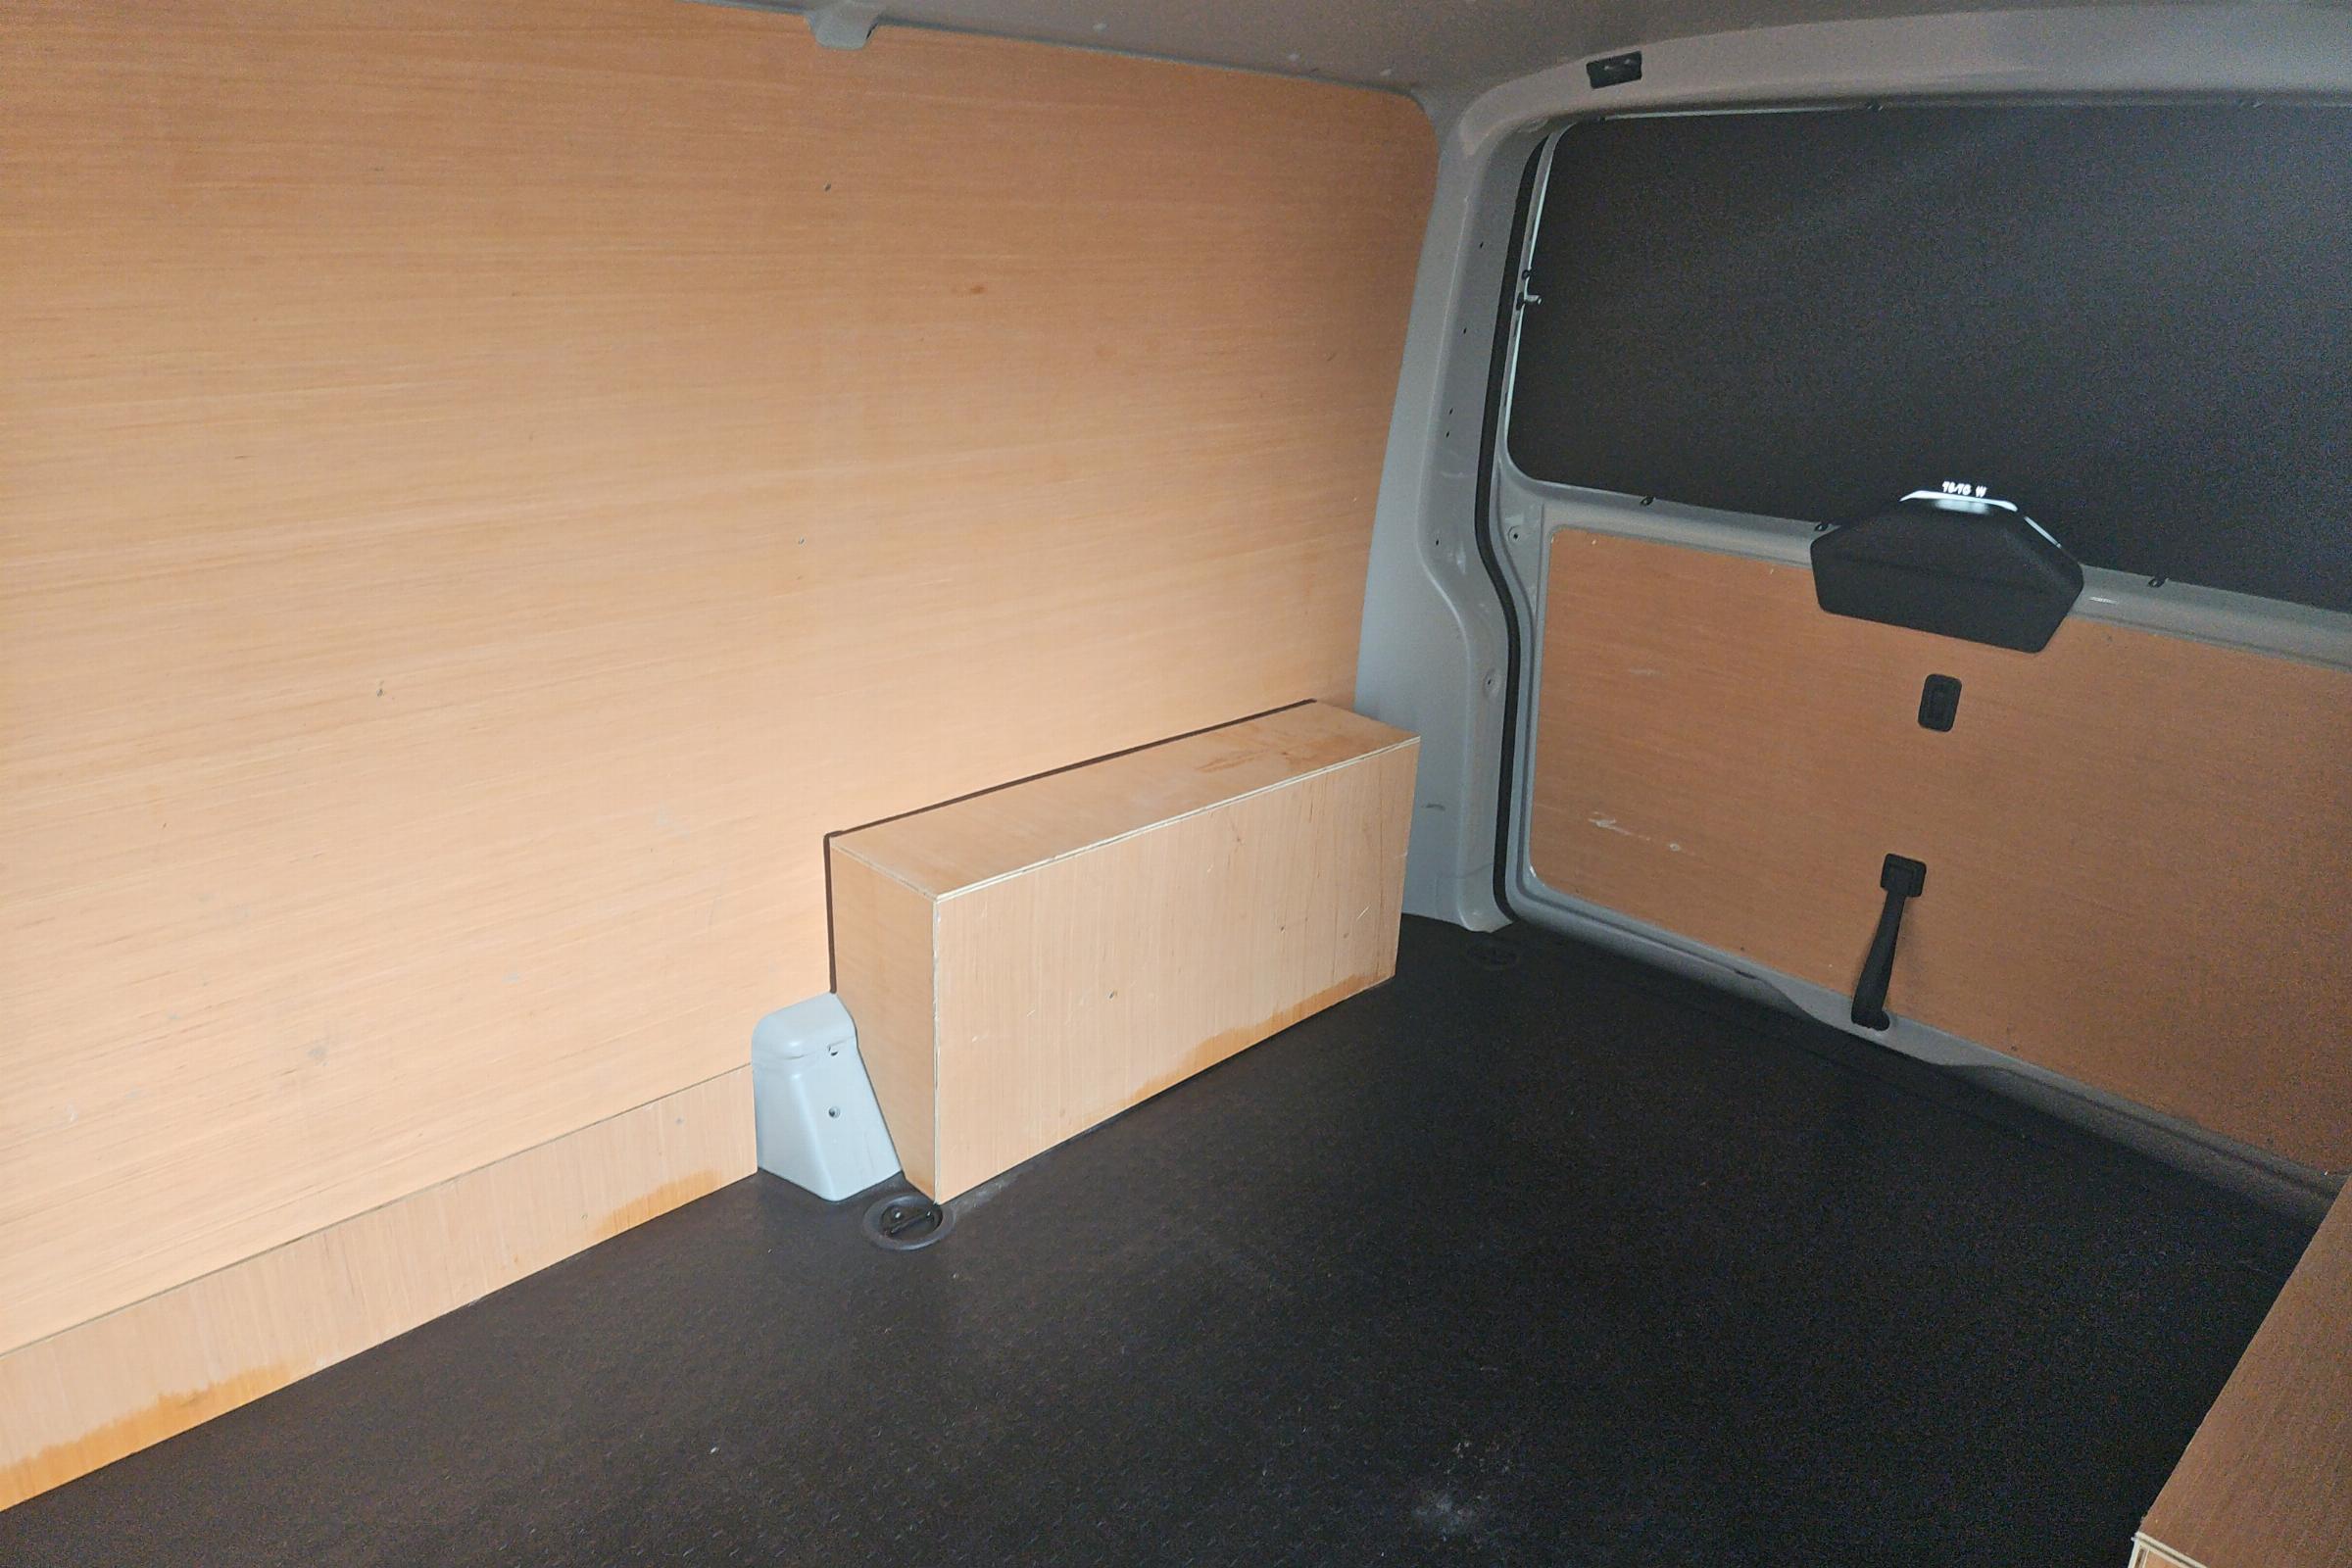 Volkswagen Transporter Panel Van 26